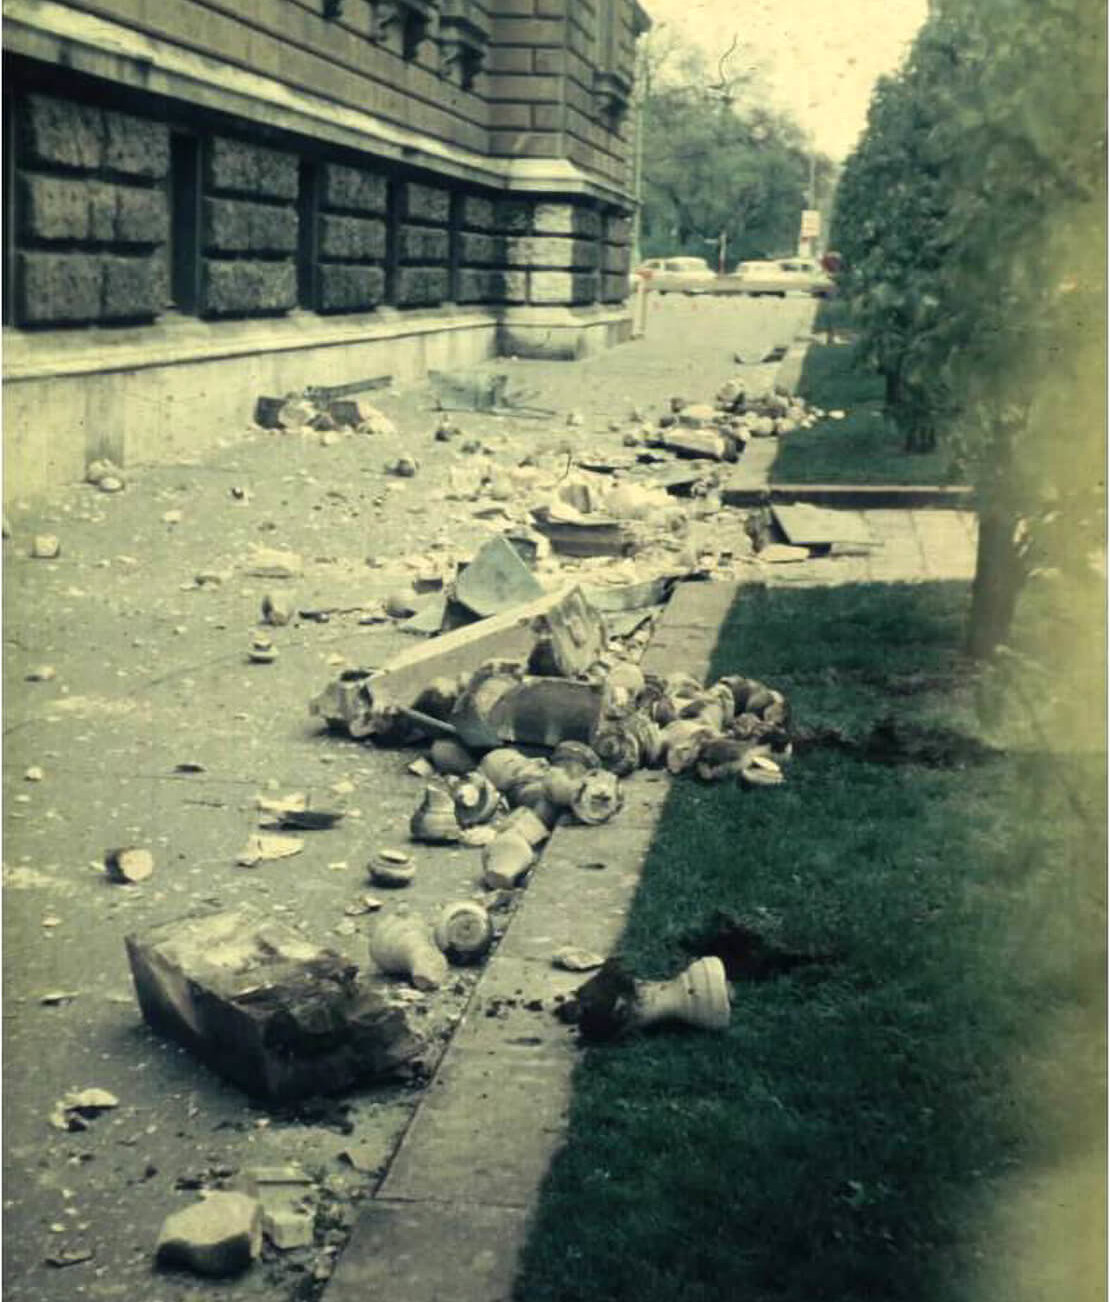 1972 fotografierte Walter Eppensteiner die Schäden an der Universität Wien. Im oberen Bild sind die Reste der abgestürzten Balustrade zu sehen. Quelle: GeoSphere Austria – Bundesanstalt für Geologie, Geophysik, Klimatologie und Meteorologie 